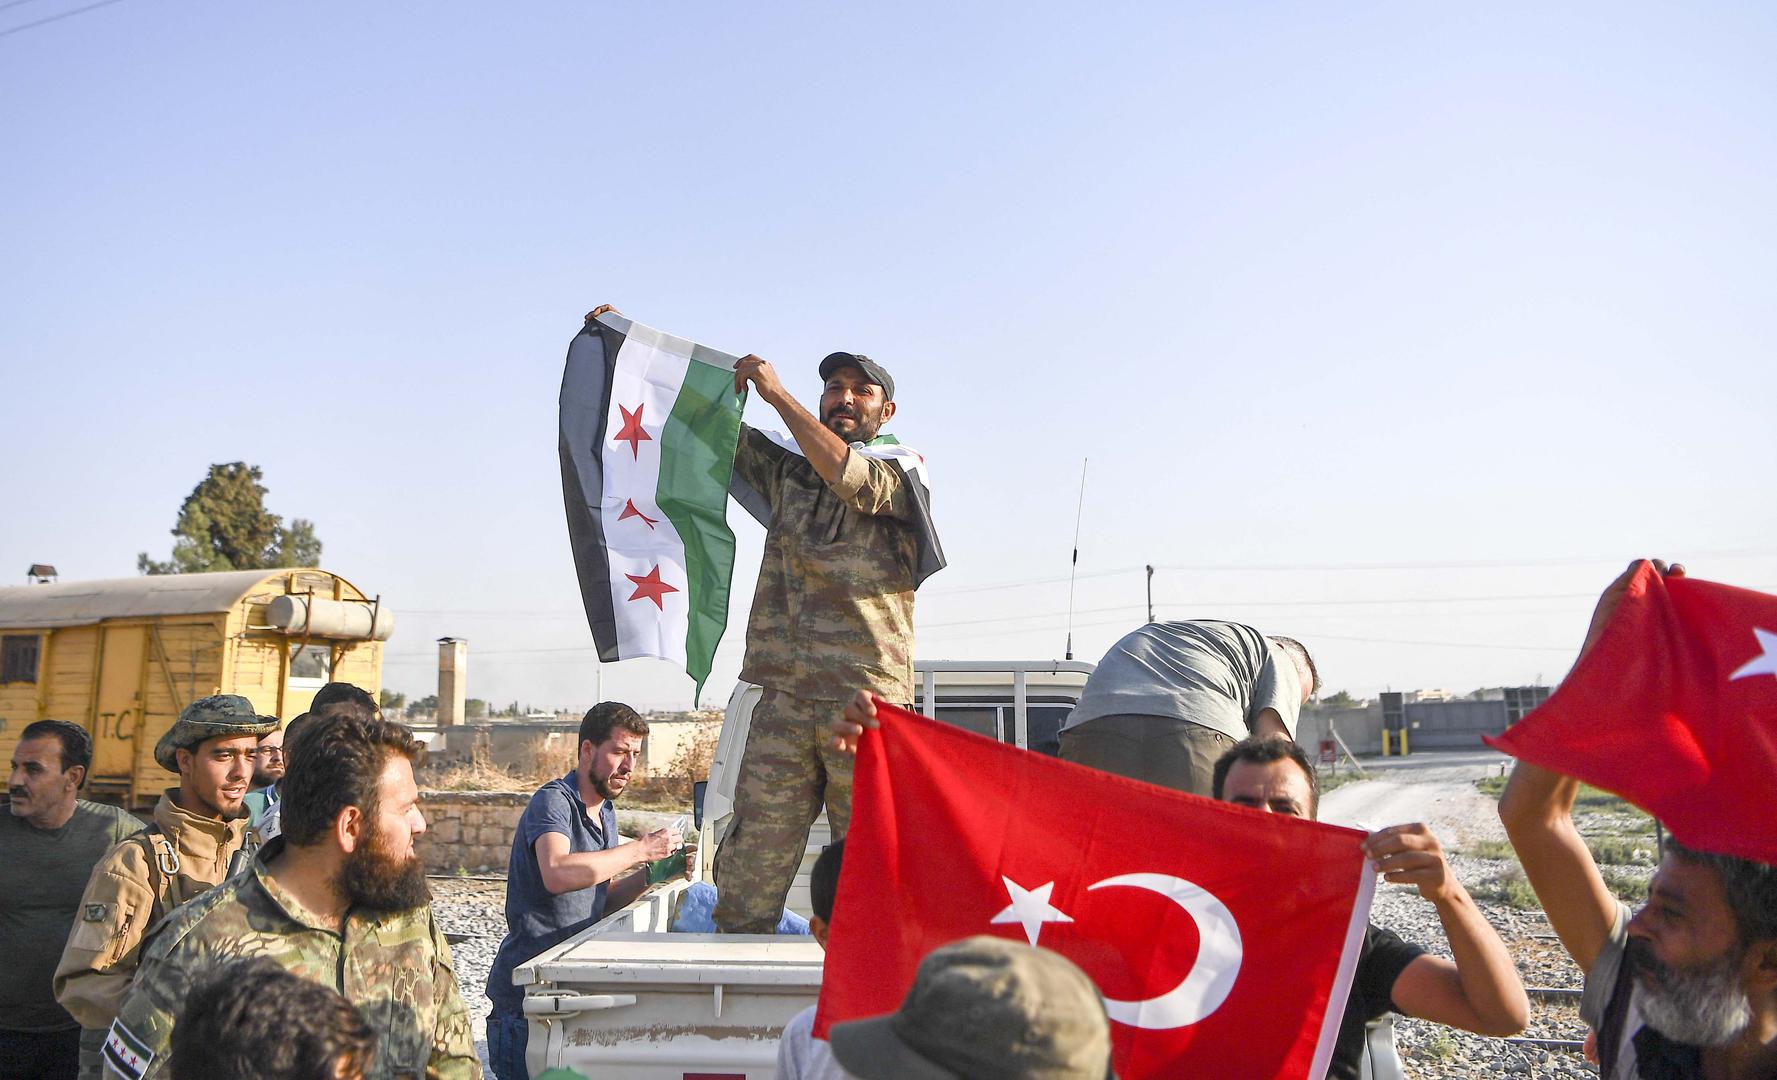 مقاتلون من "الجيش السوري الحر" (المعروف أيضا بـ "الجيش الوطني السوري") يدخلون مدينة تل أبيض. 